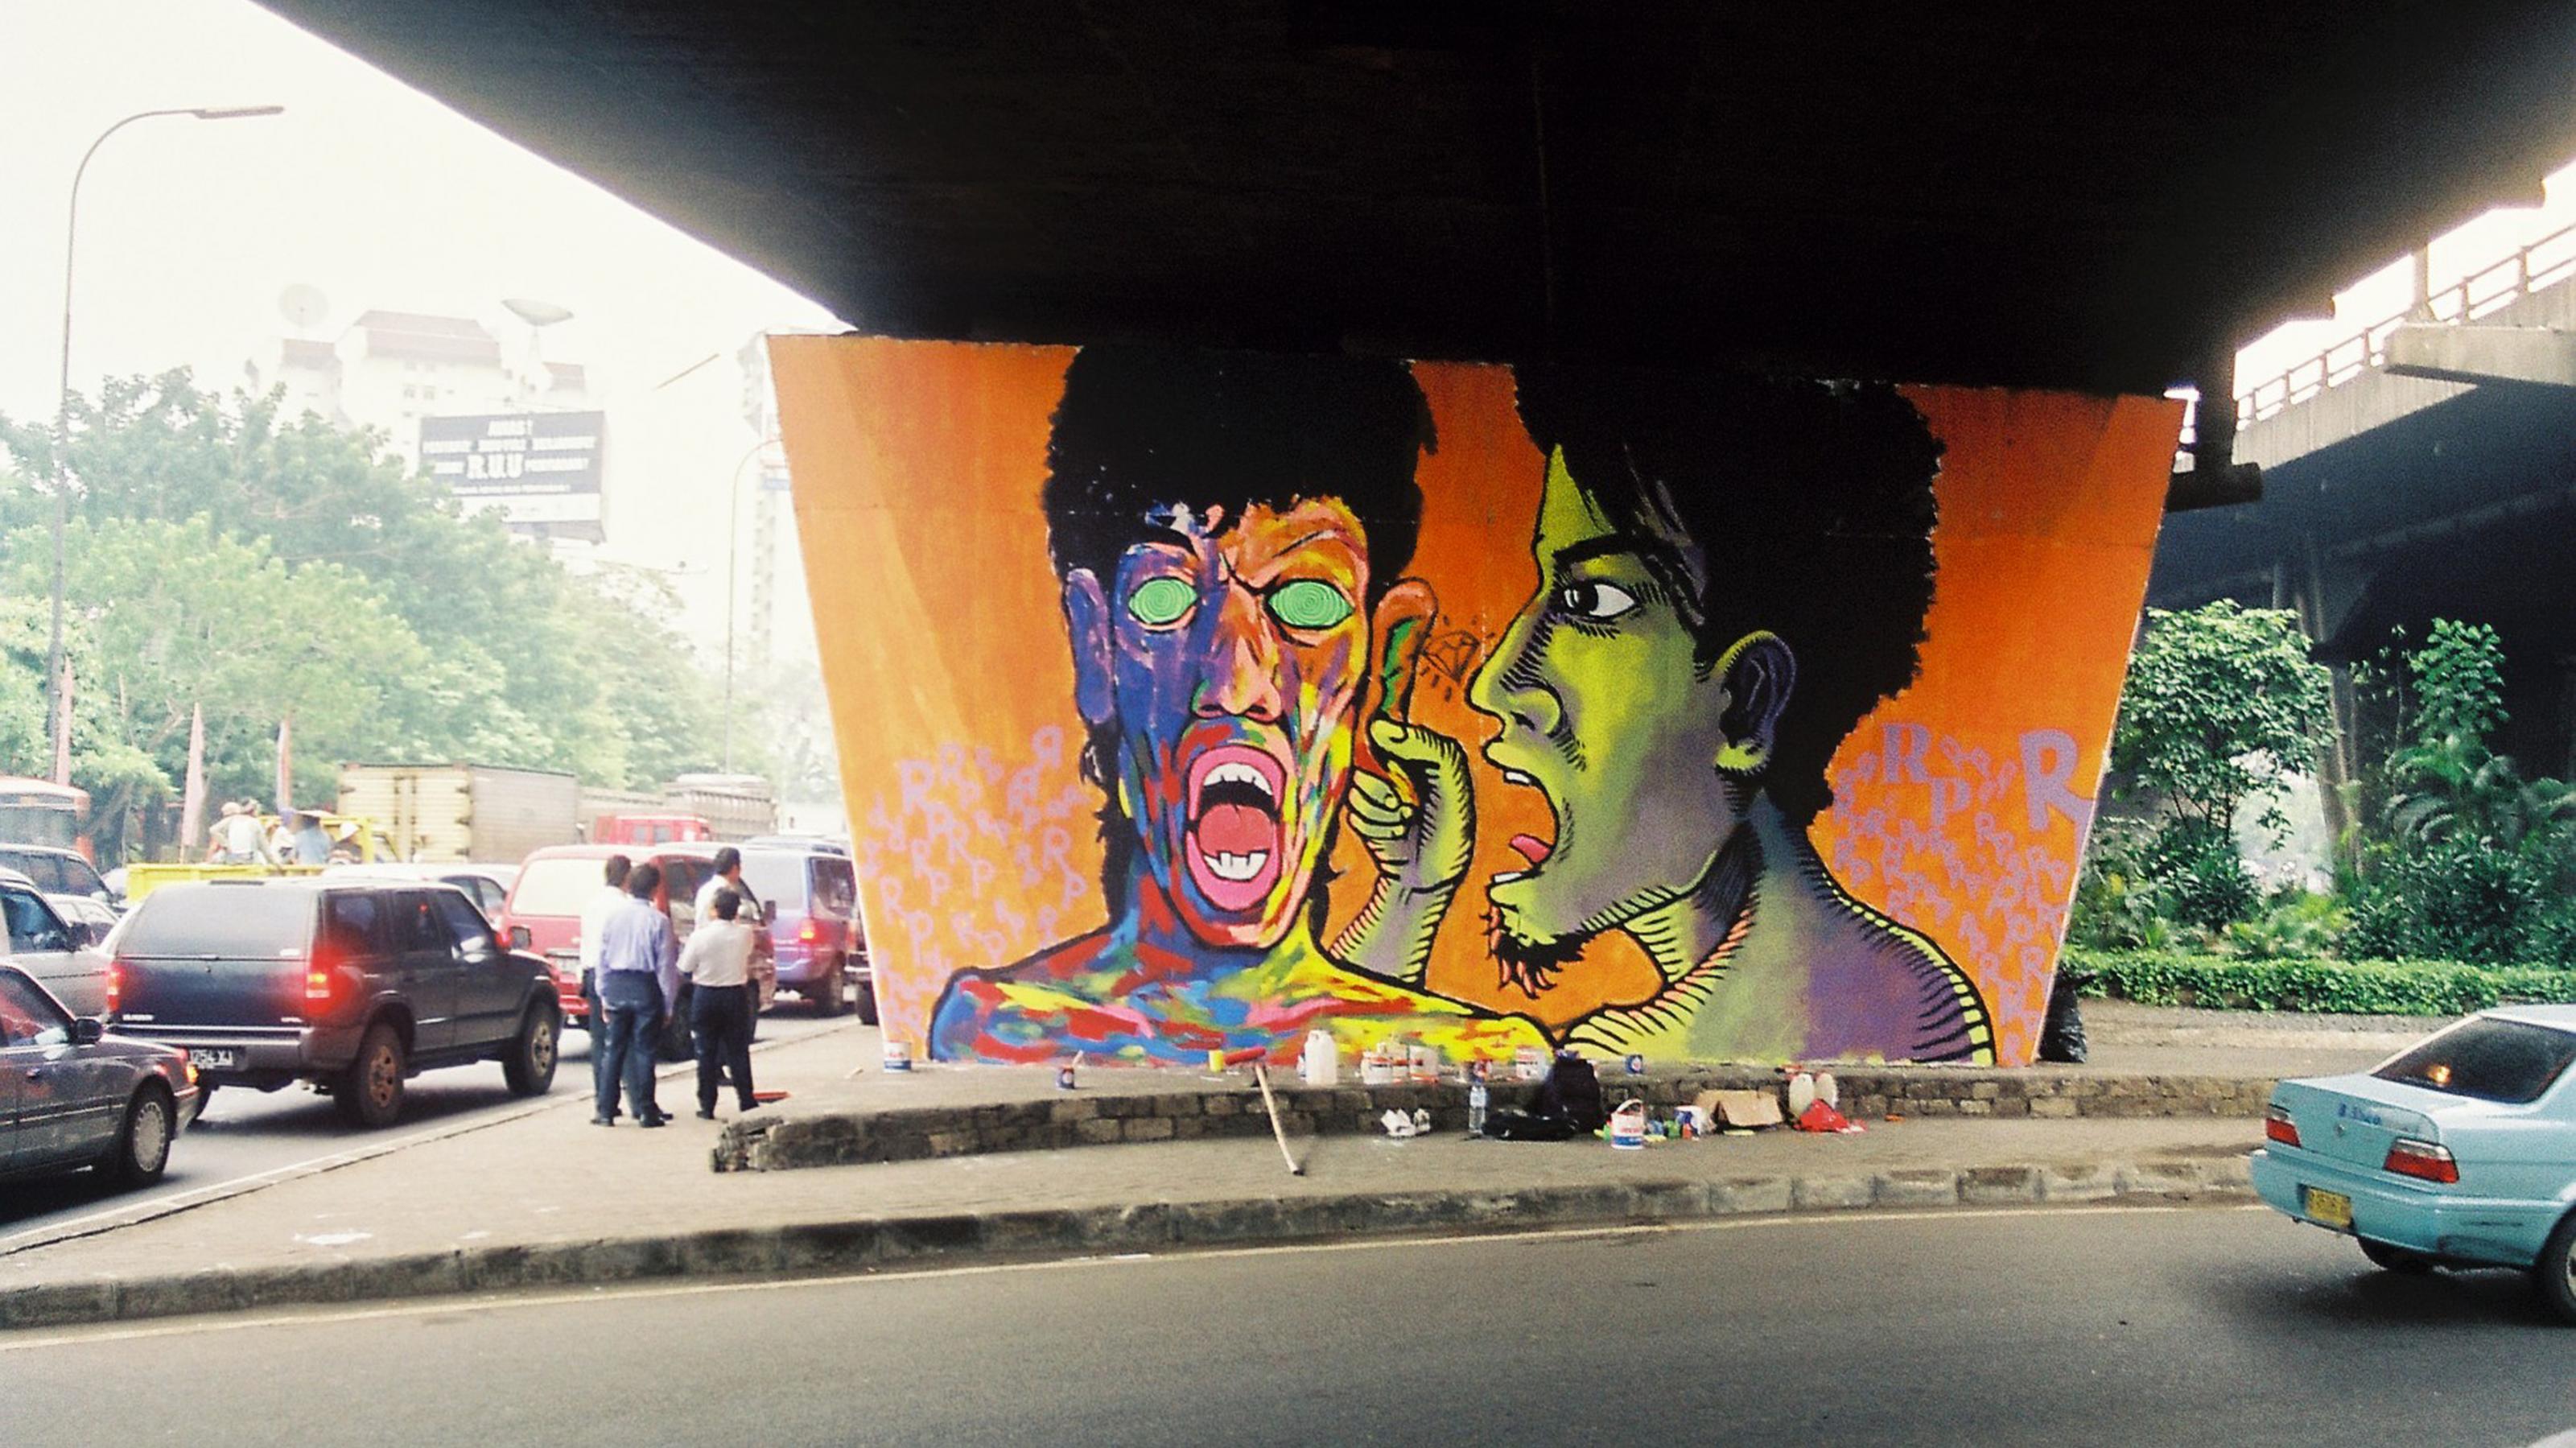 Knalliges Wandbild mit zwei großen Köpfen an einer Betonwand unter einer Autobahnunterführung in Jakarta 2001